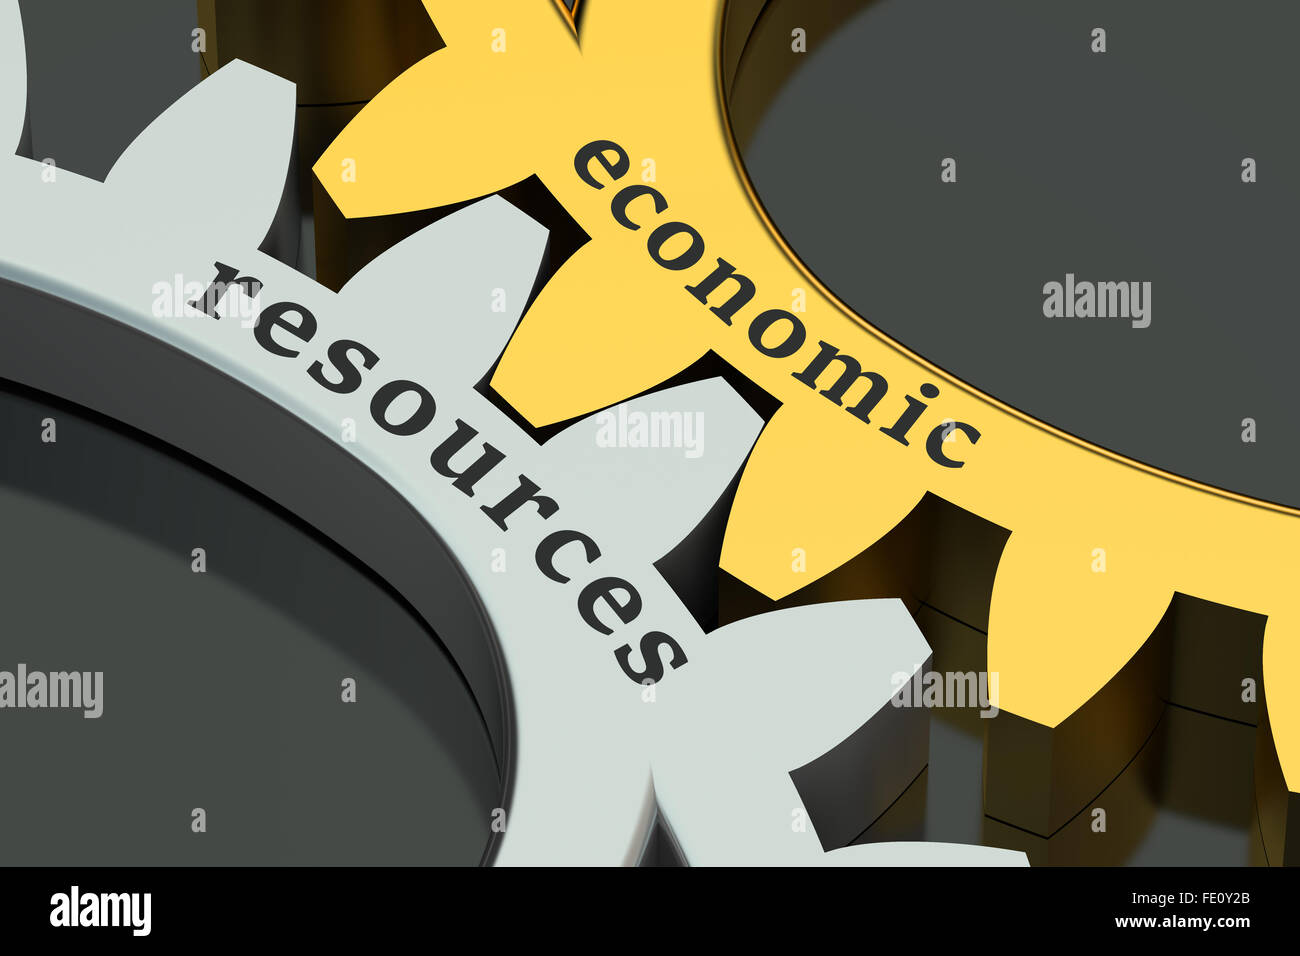 economic resources